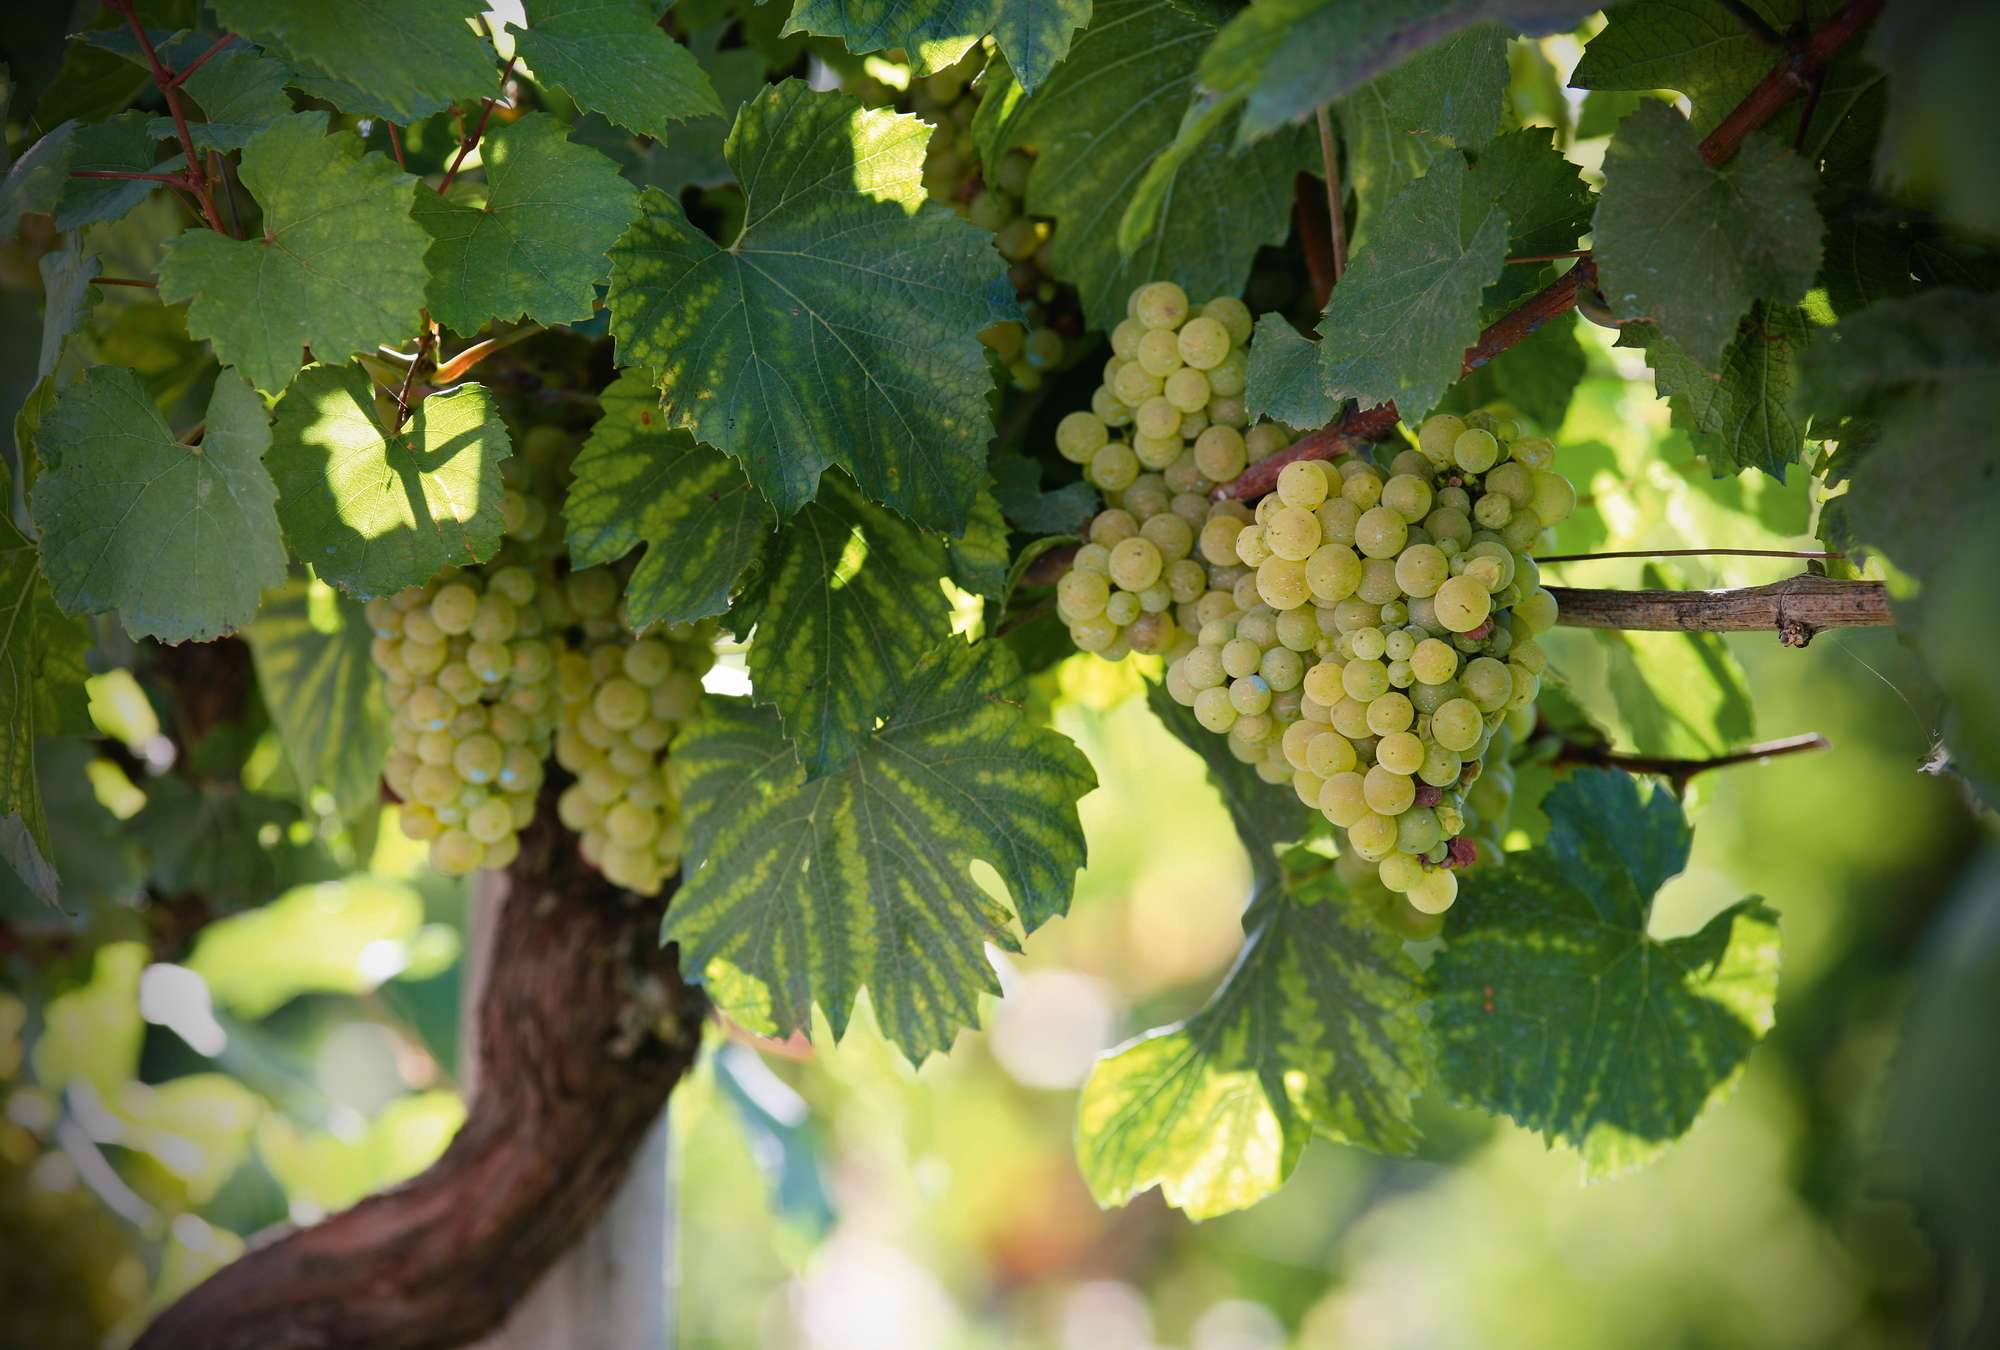             Vine - fotobehang wijngaard met heldere wijnstokken
        